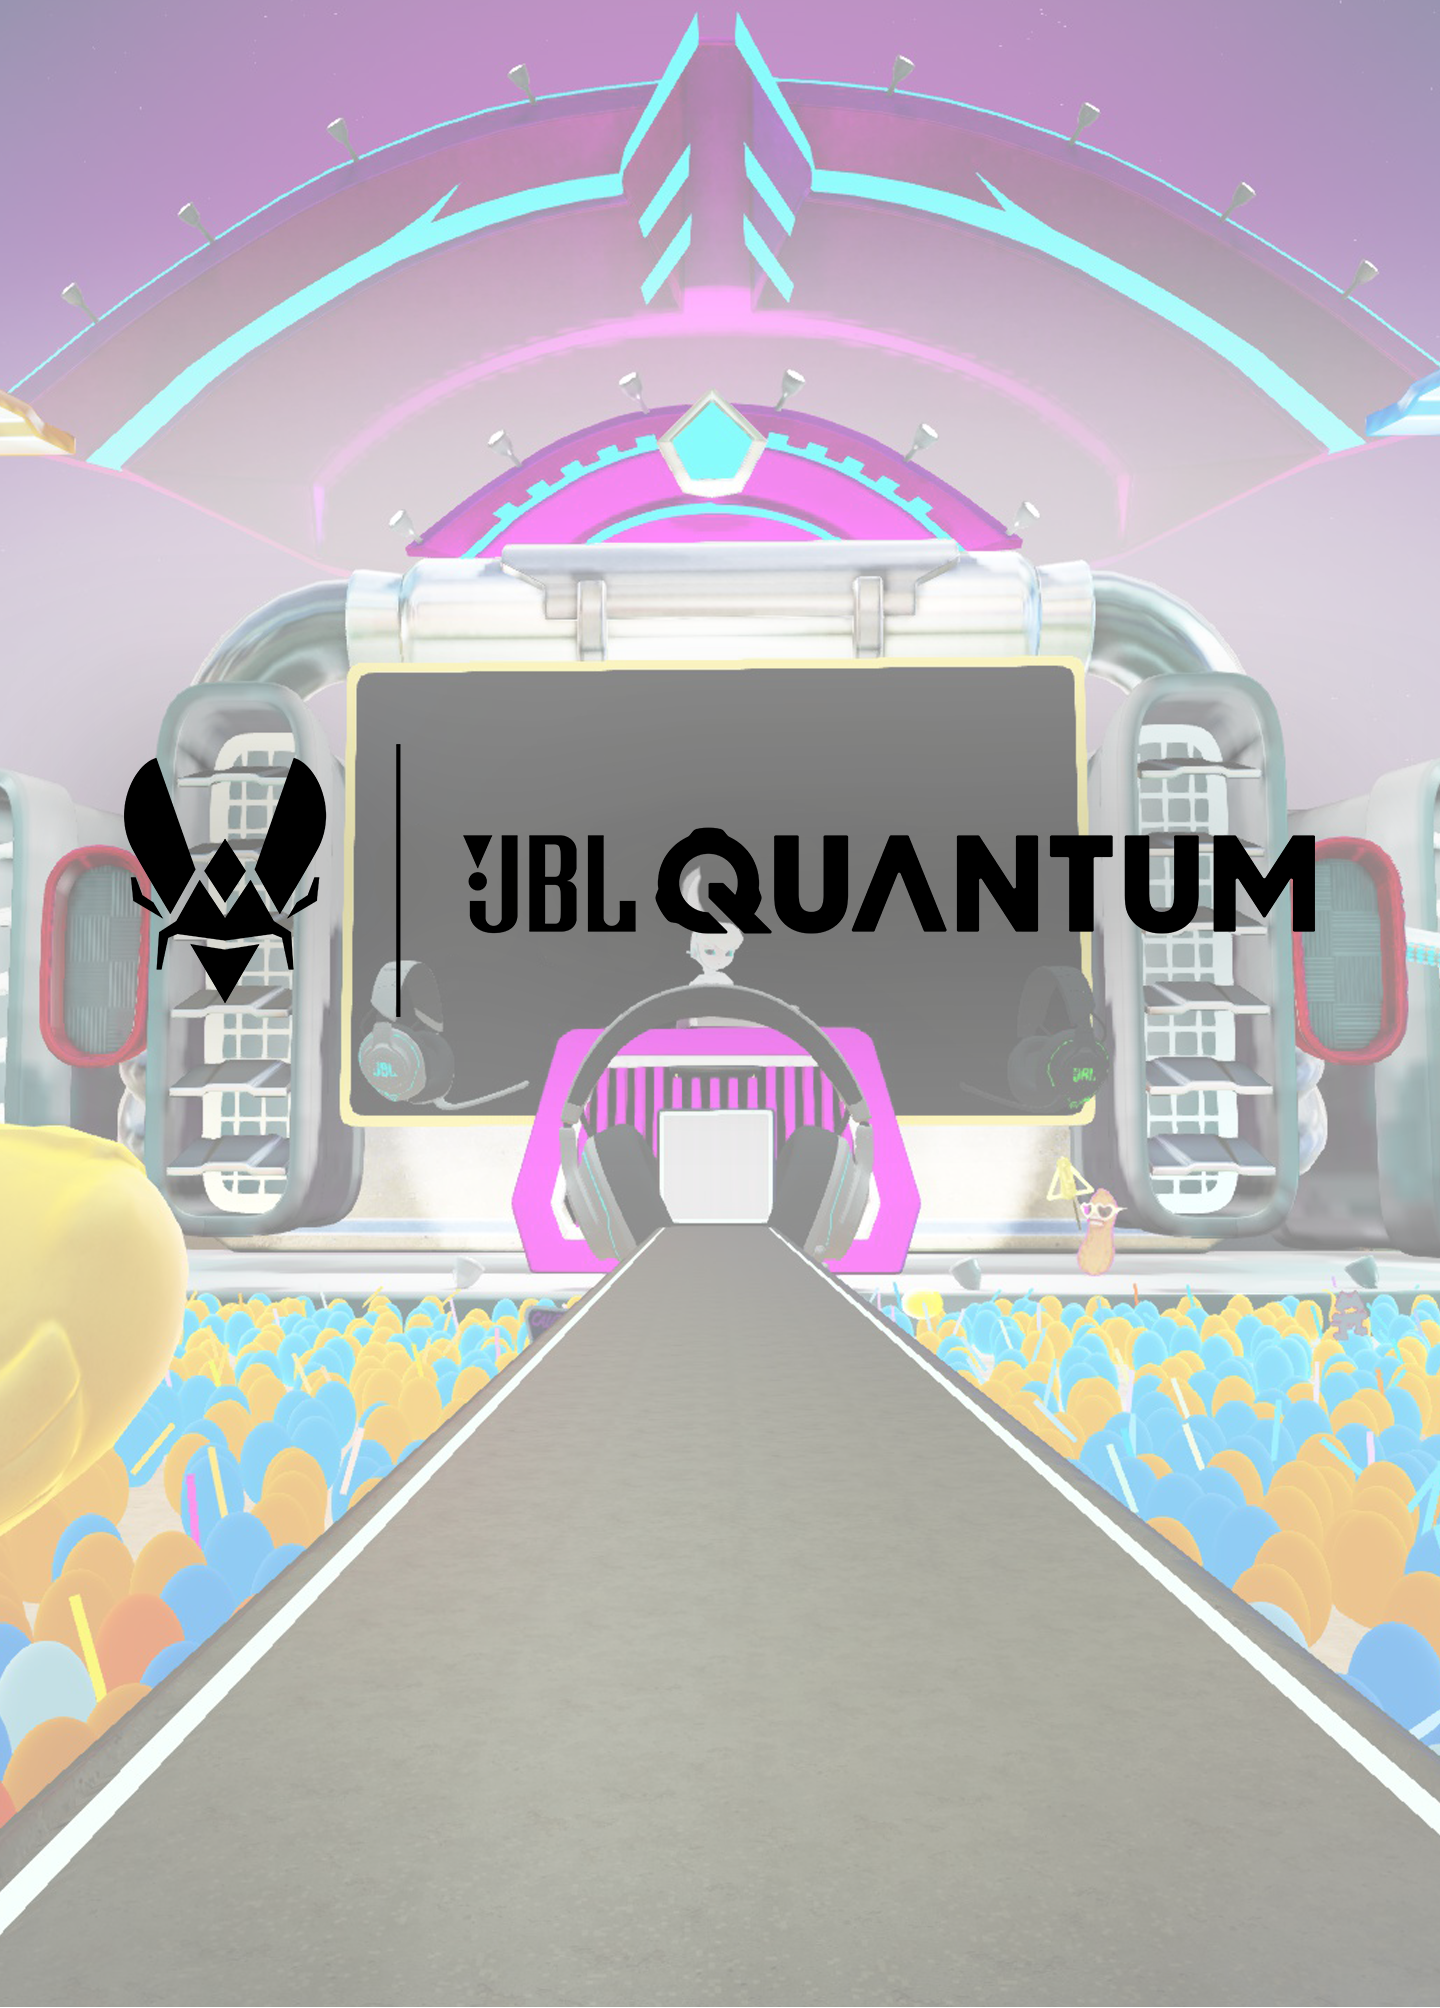 JBL Quantum Challenge